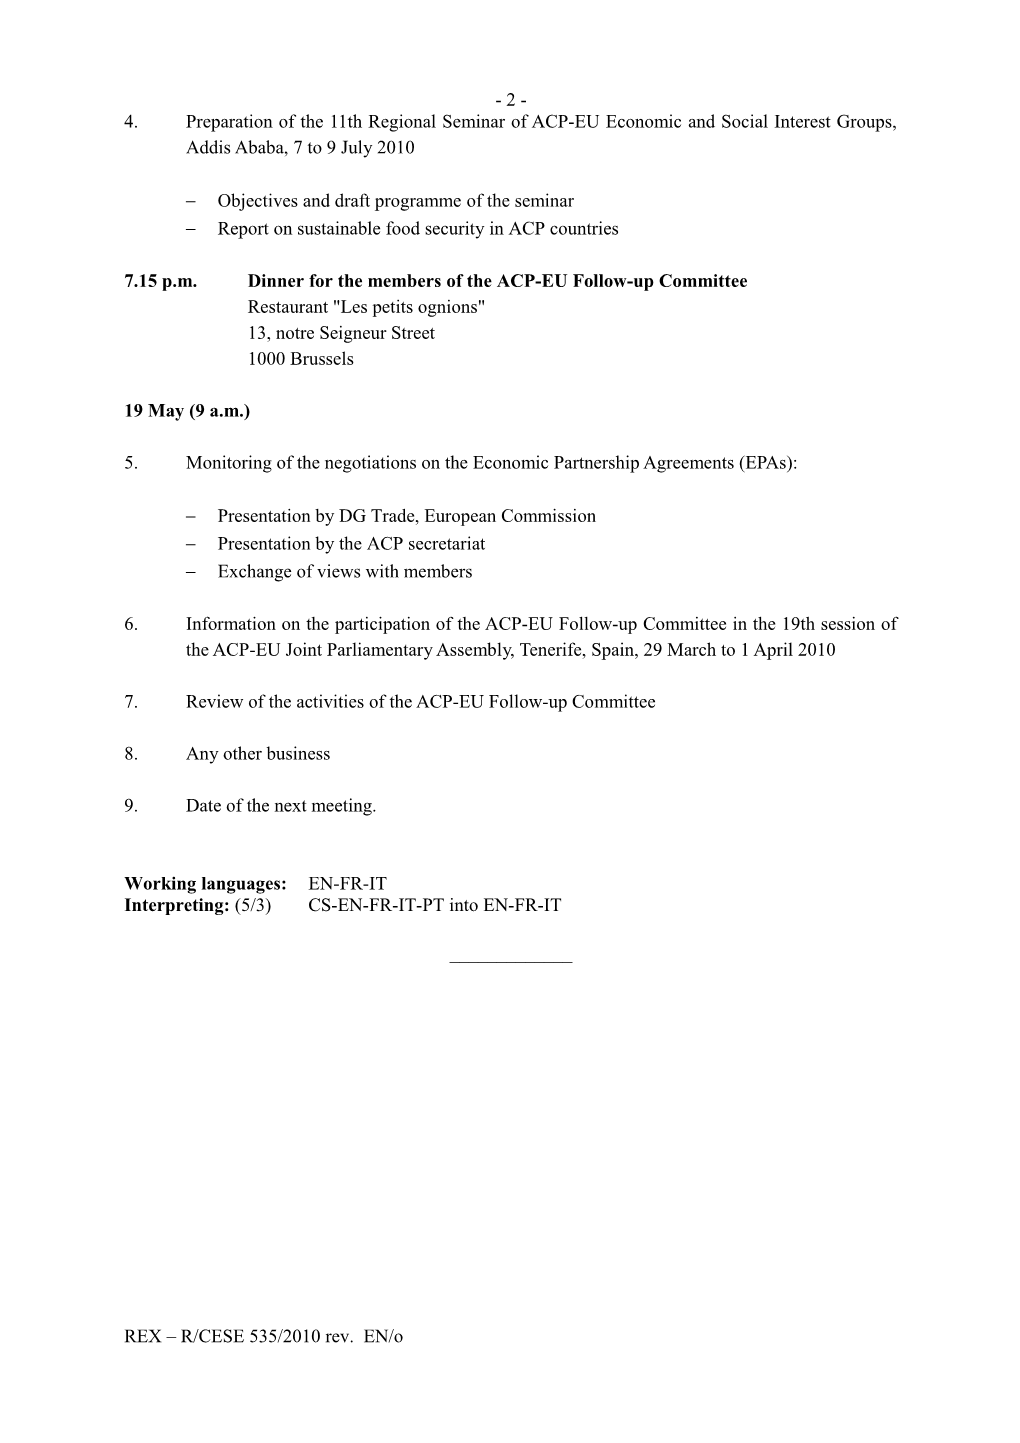 ACP-EU Follow-Up Committee